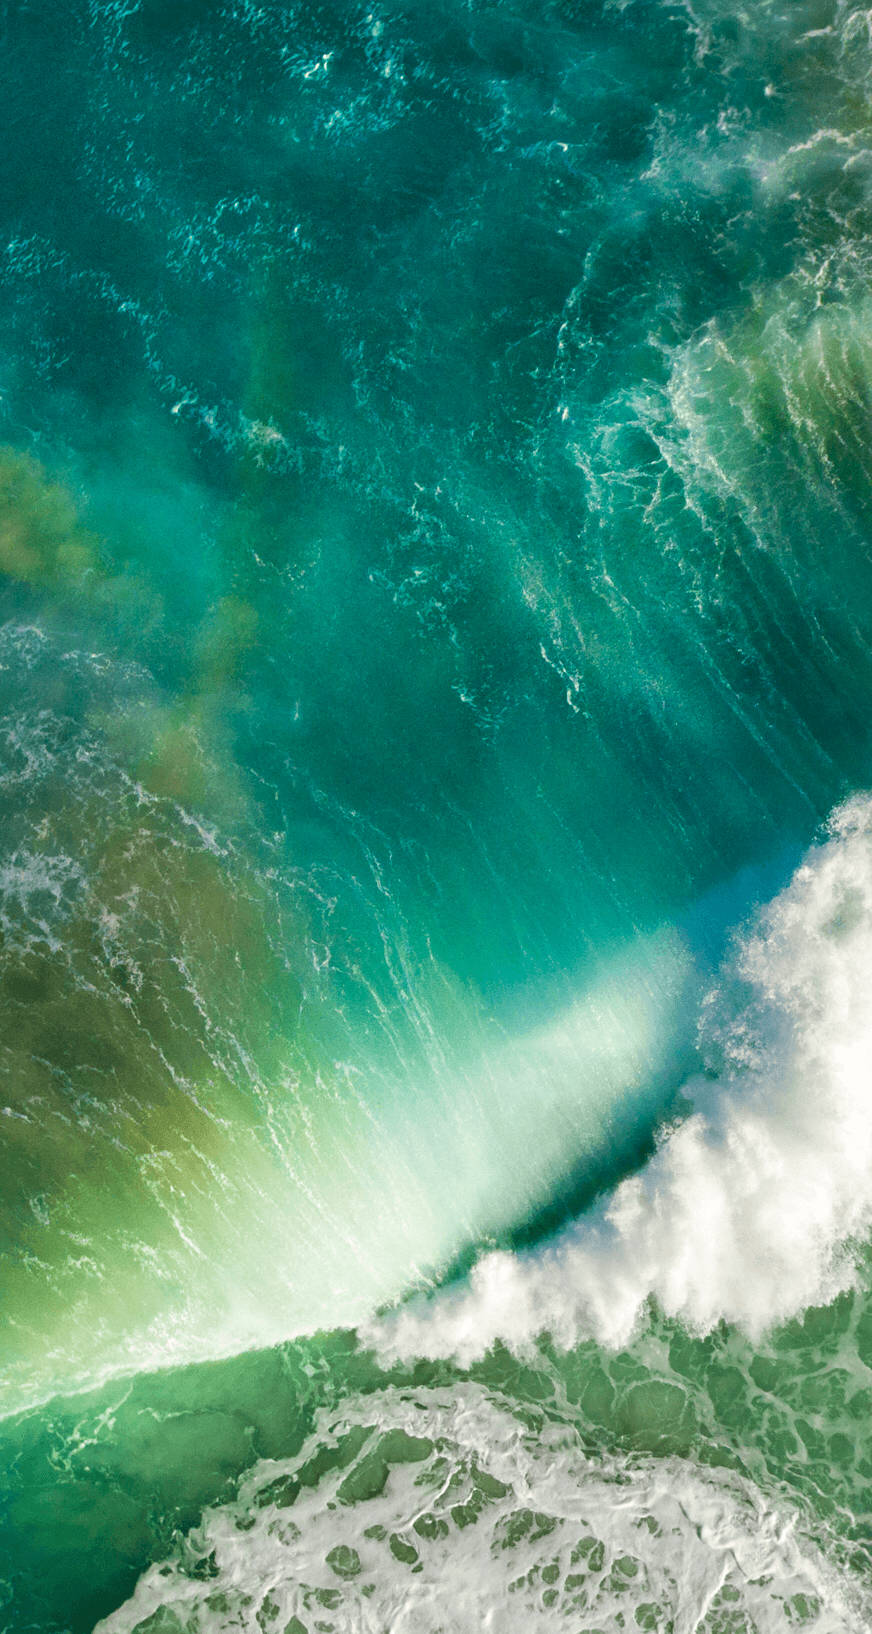 Foamy Ocean Waves Original iPhone 4 Wallpaper